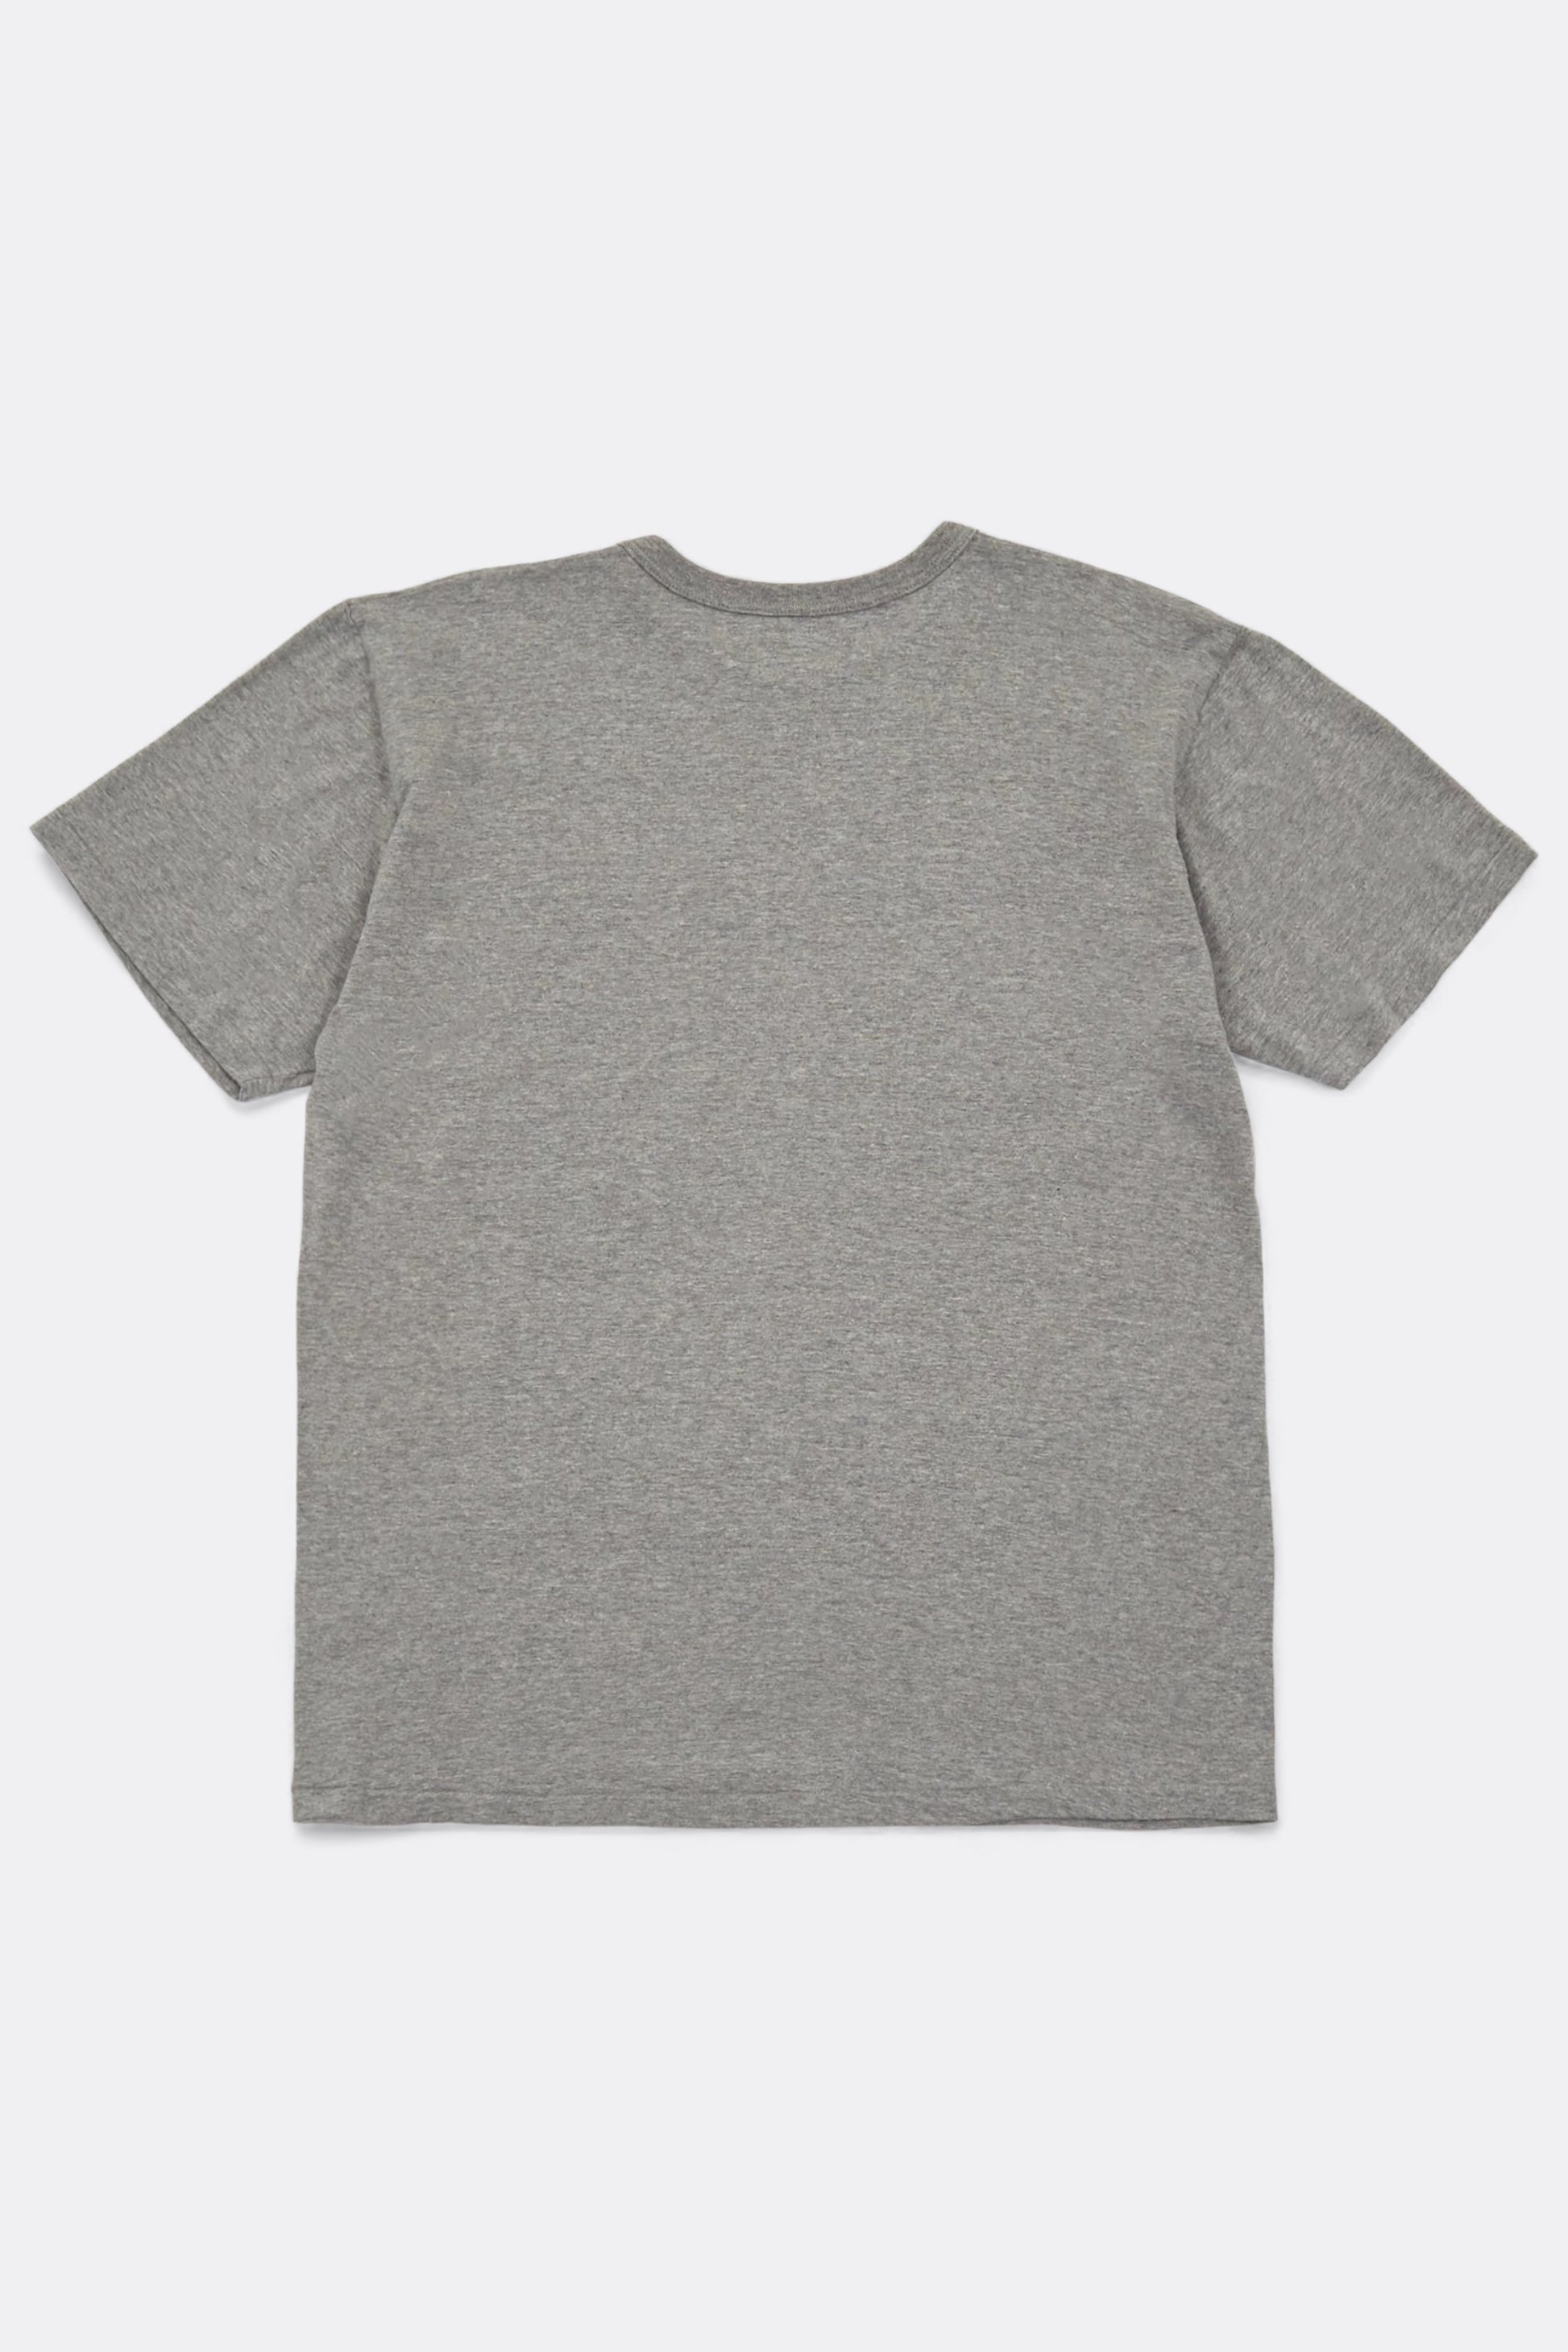 Sunray - Haleiwa T-Shirt (Hambledon Grey)Sunray Sportswear - Haleiwa T-Shirt (Hambledon Grey)